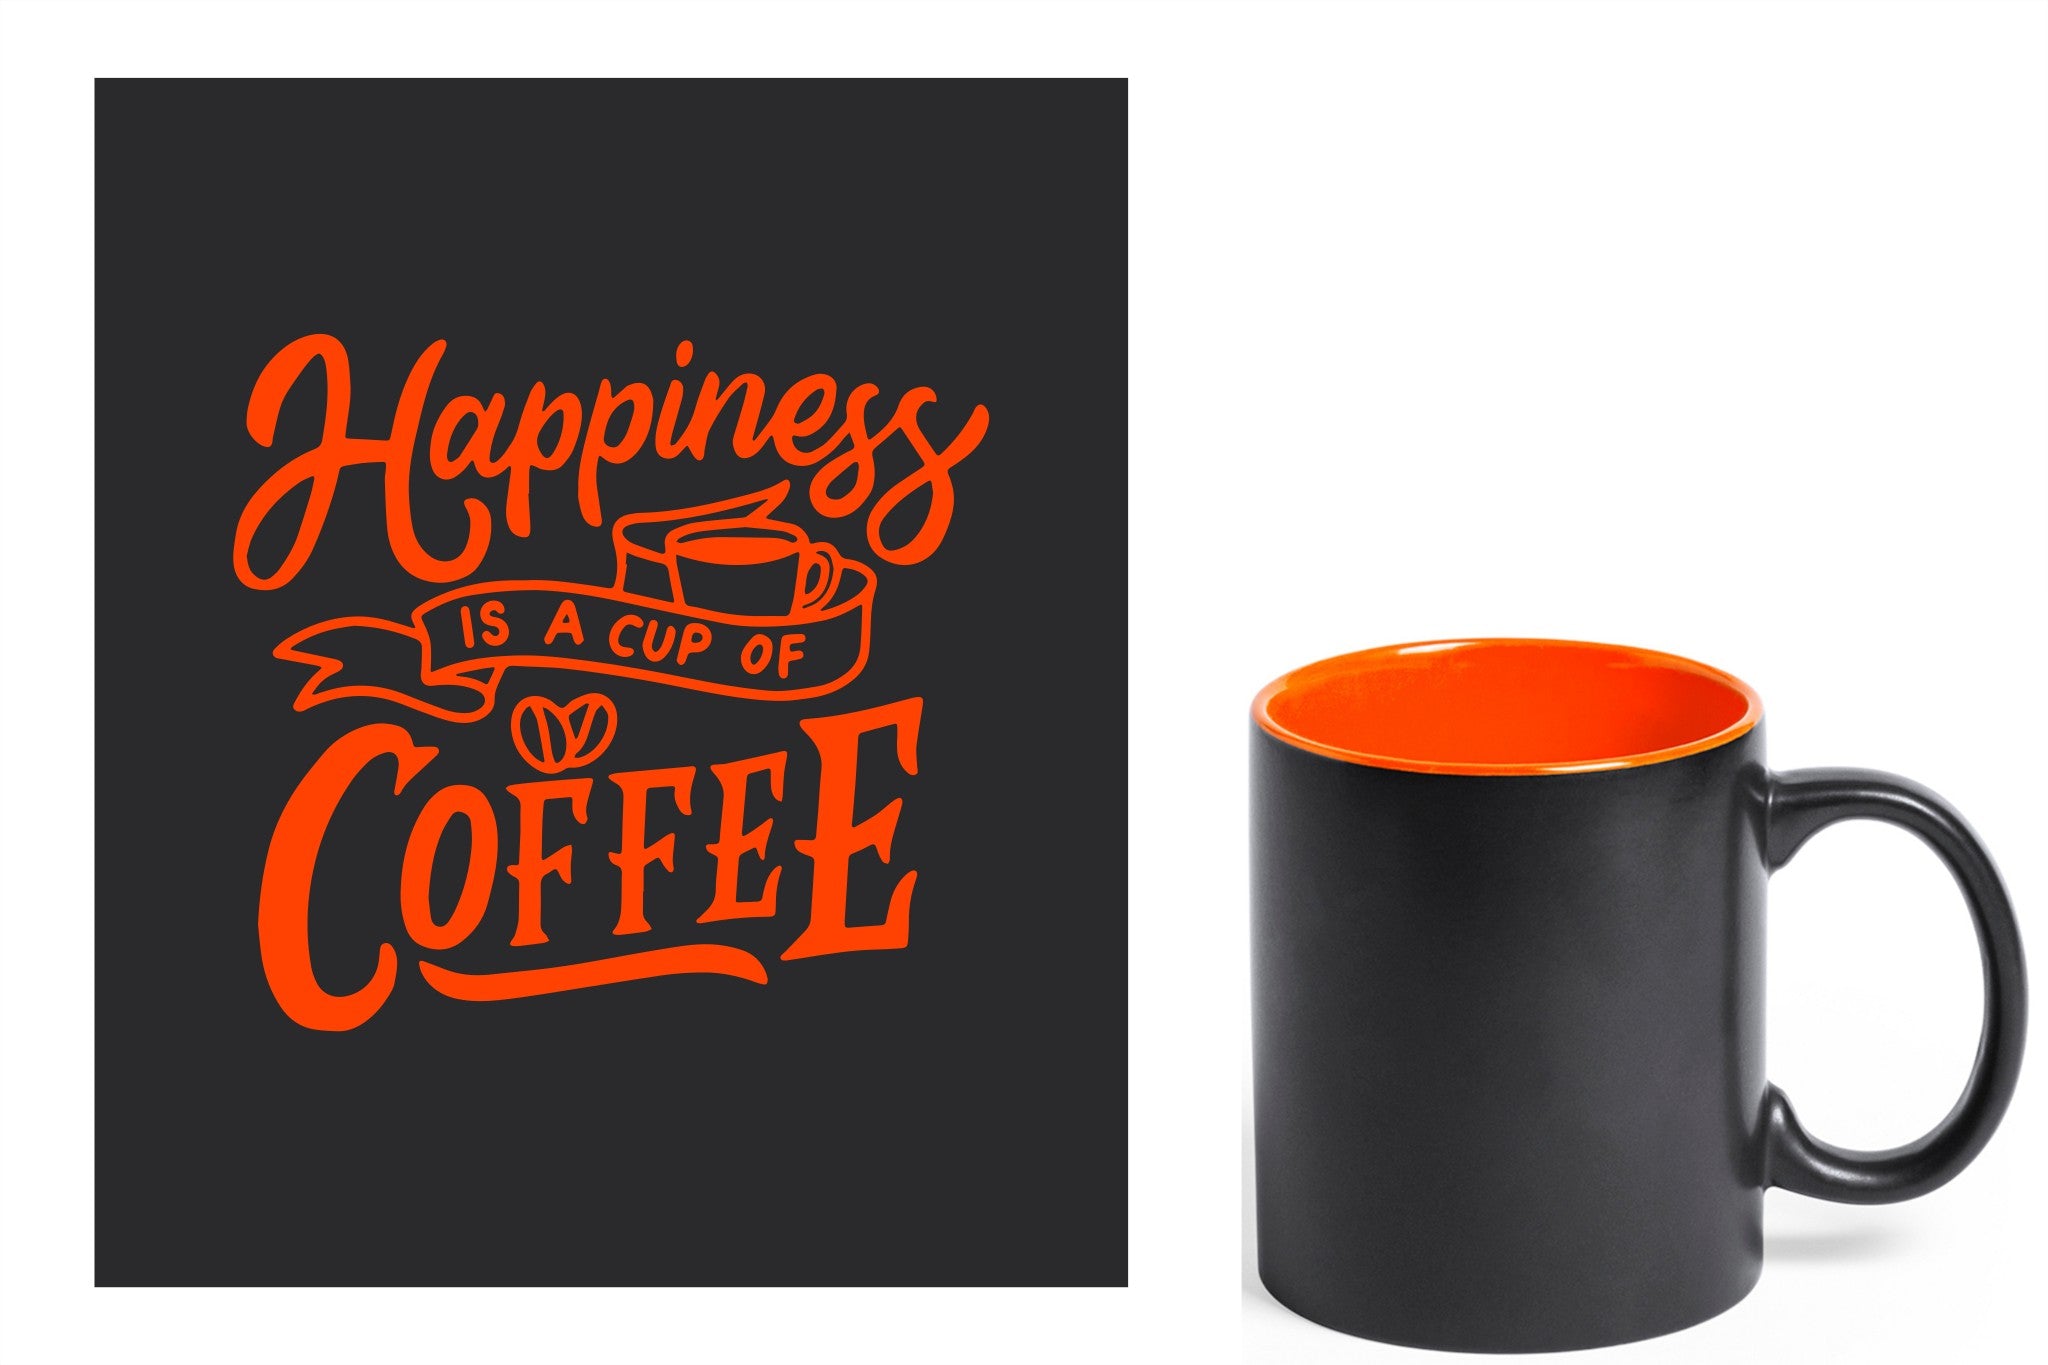 zwarte keramische mok met oranje gravure  'Happiness is a cup of coffee'.